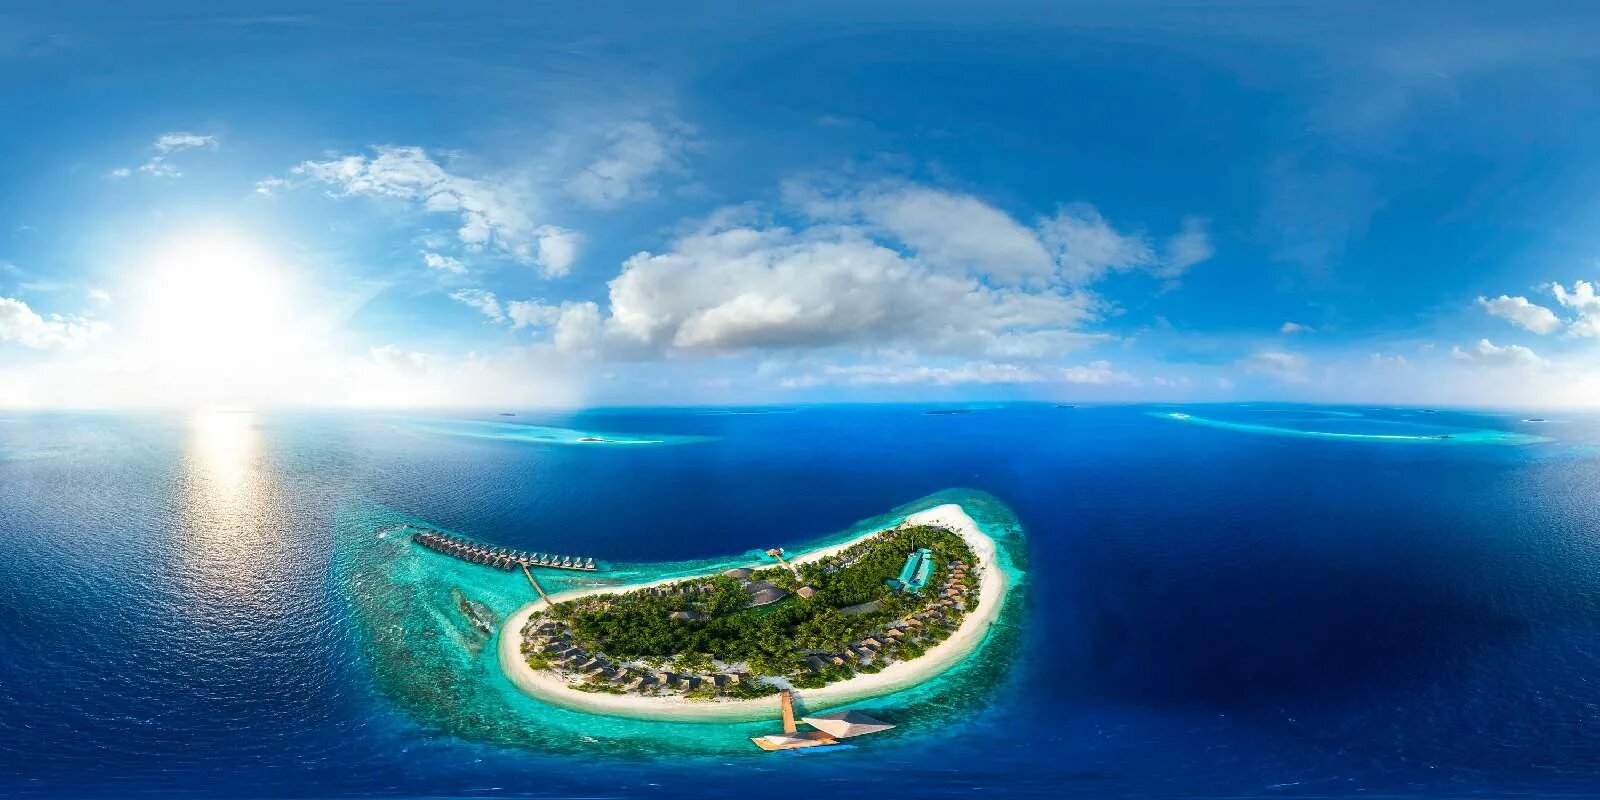 Dreamland unique. Мальдивы,Баа Атолл,Dreamland the unique Sea. Залив Ханифару, Атолл Баа. Dreamland the unique Sea & Lake Resort Spa 5*. Dreamland Maldives Resort.